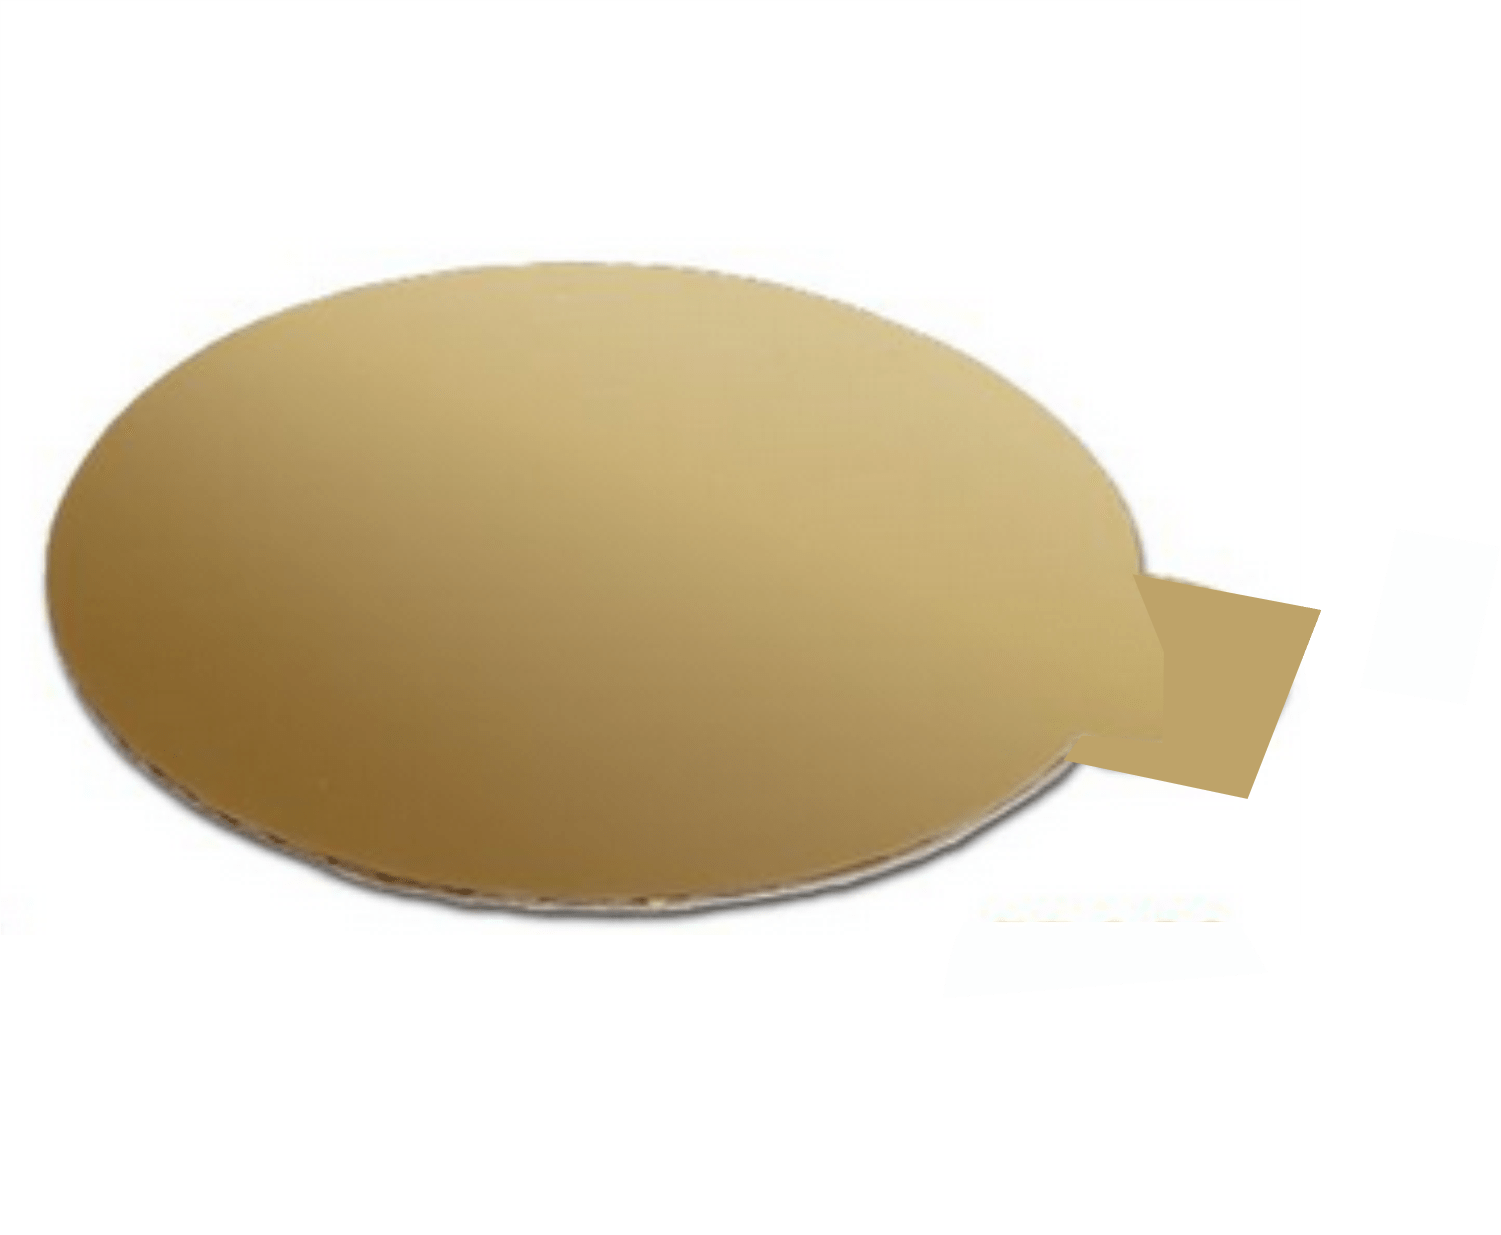 Porta Docinho Dourado 8 cm - 10 UN  Ecopack/Sulformas